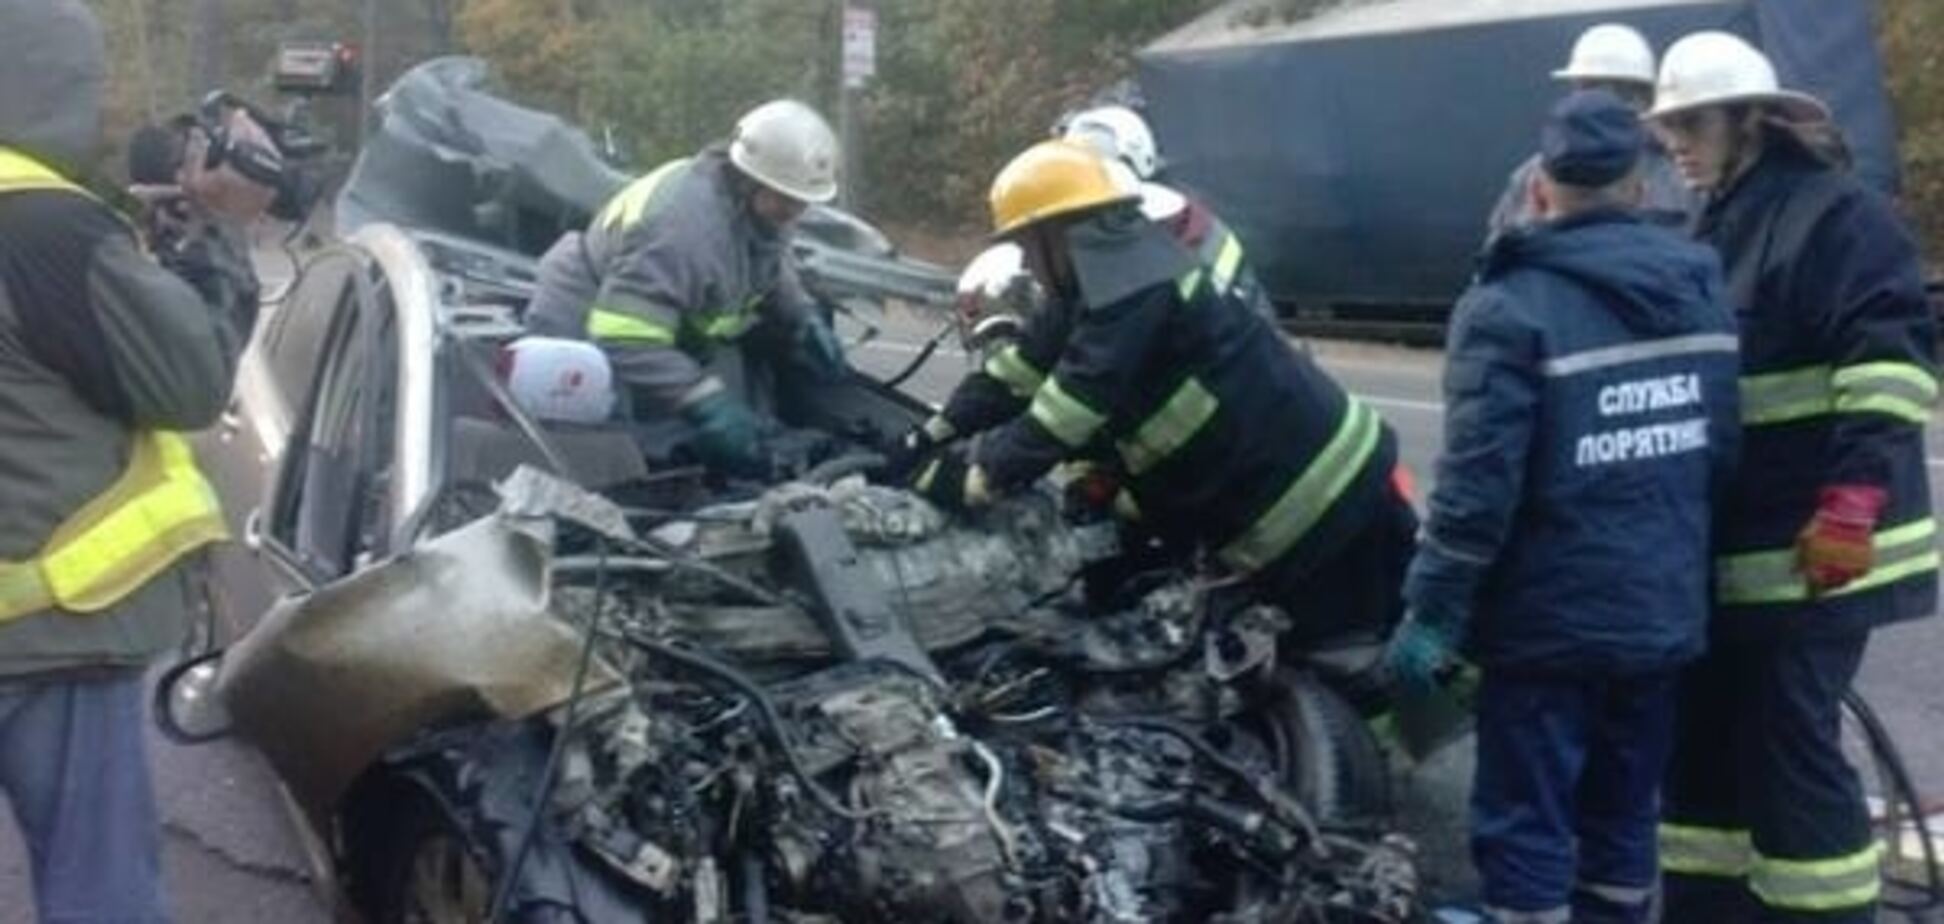 Под Киевом неуправляемый автомобиль врезался в фуру, водитель погиб. Схема ДТП